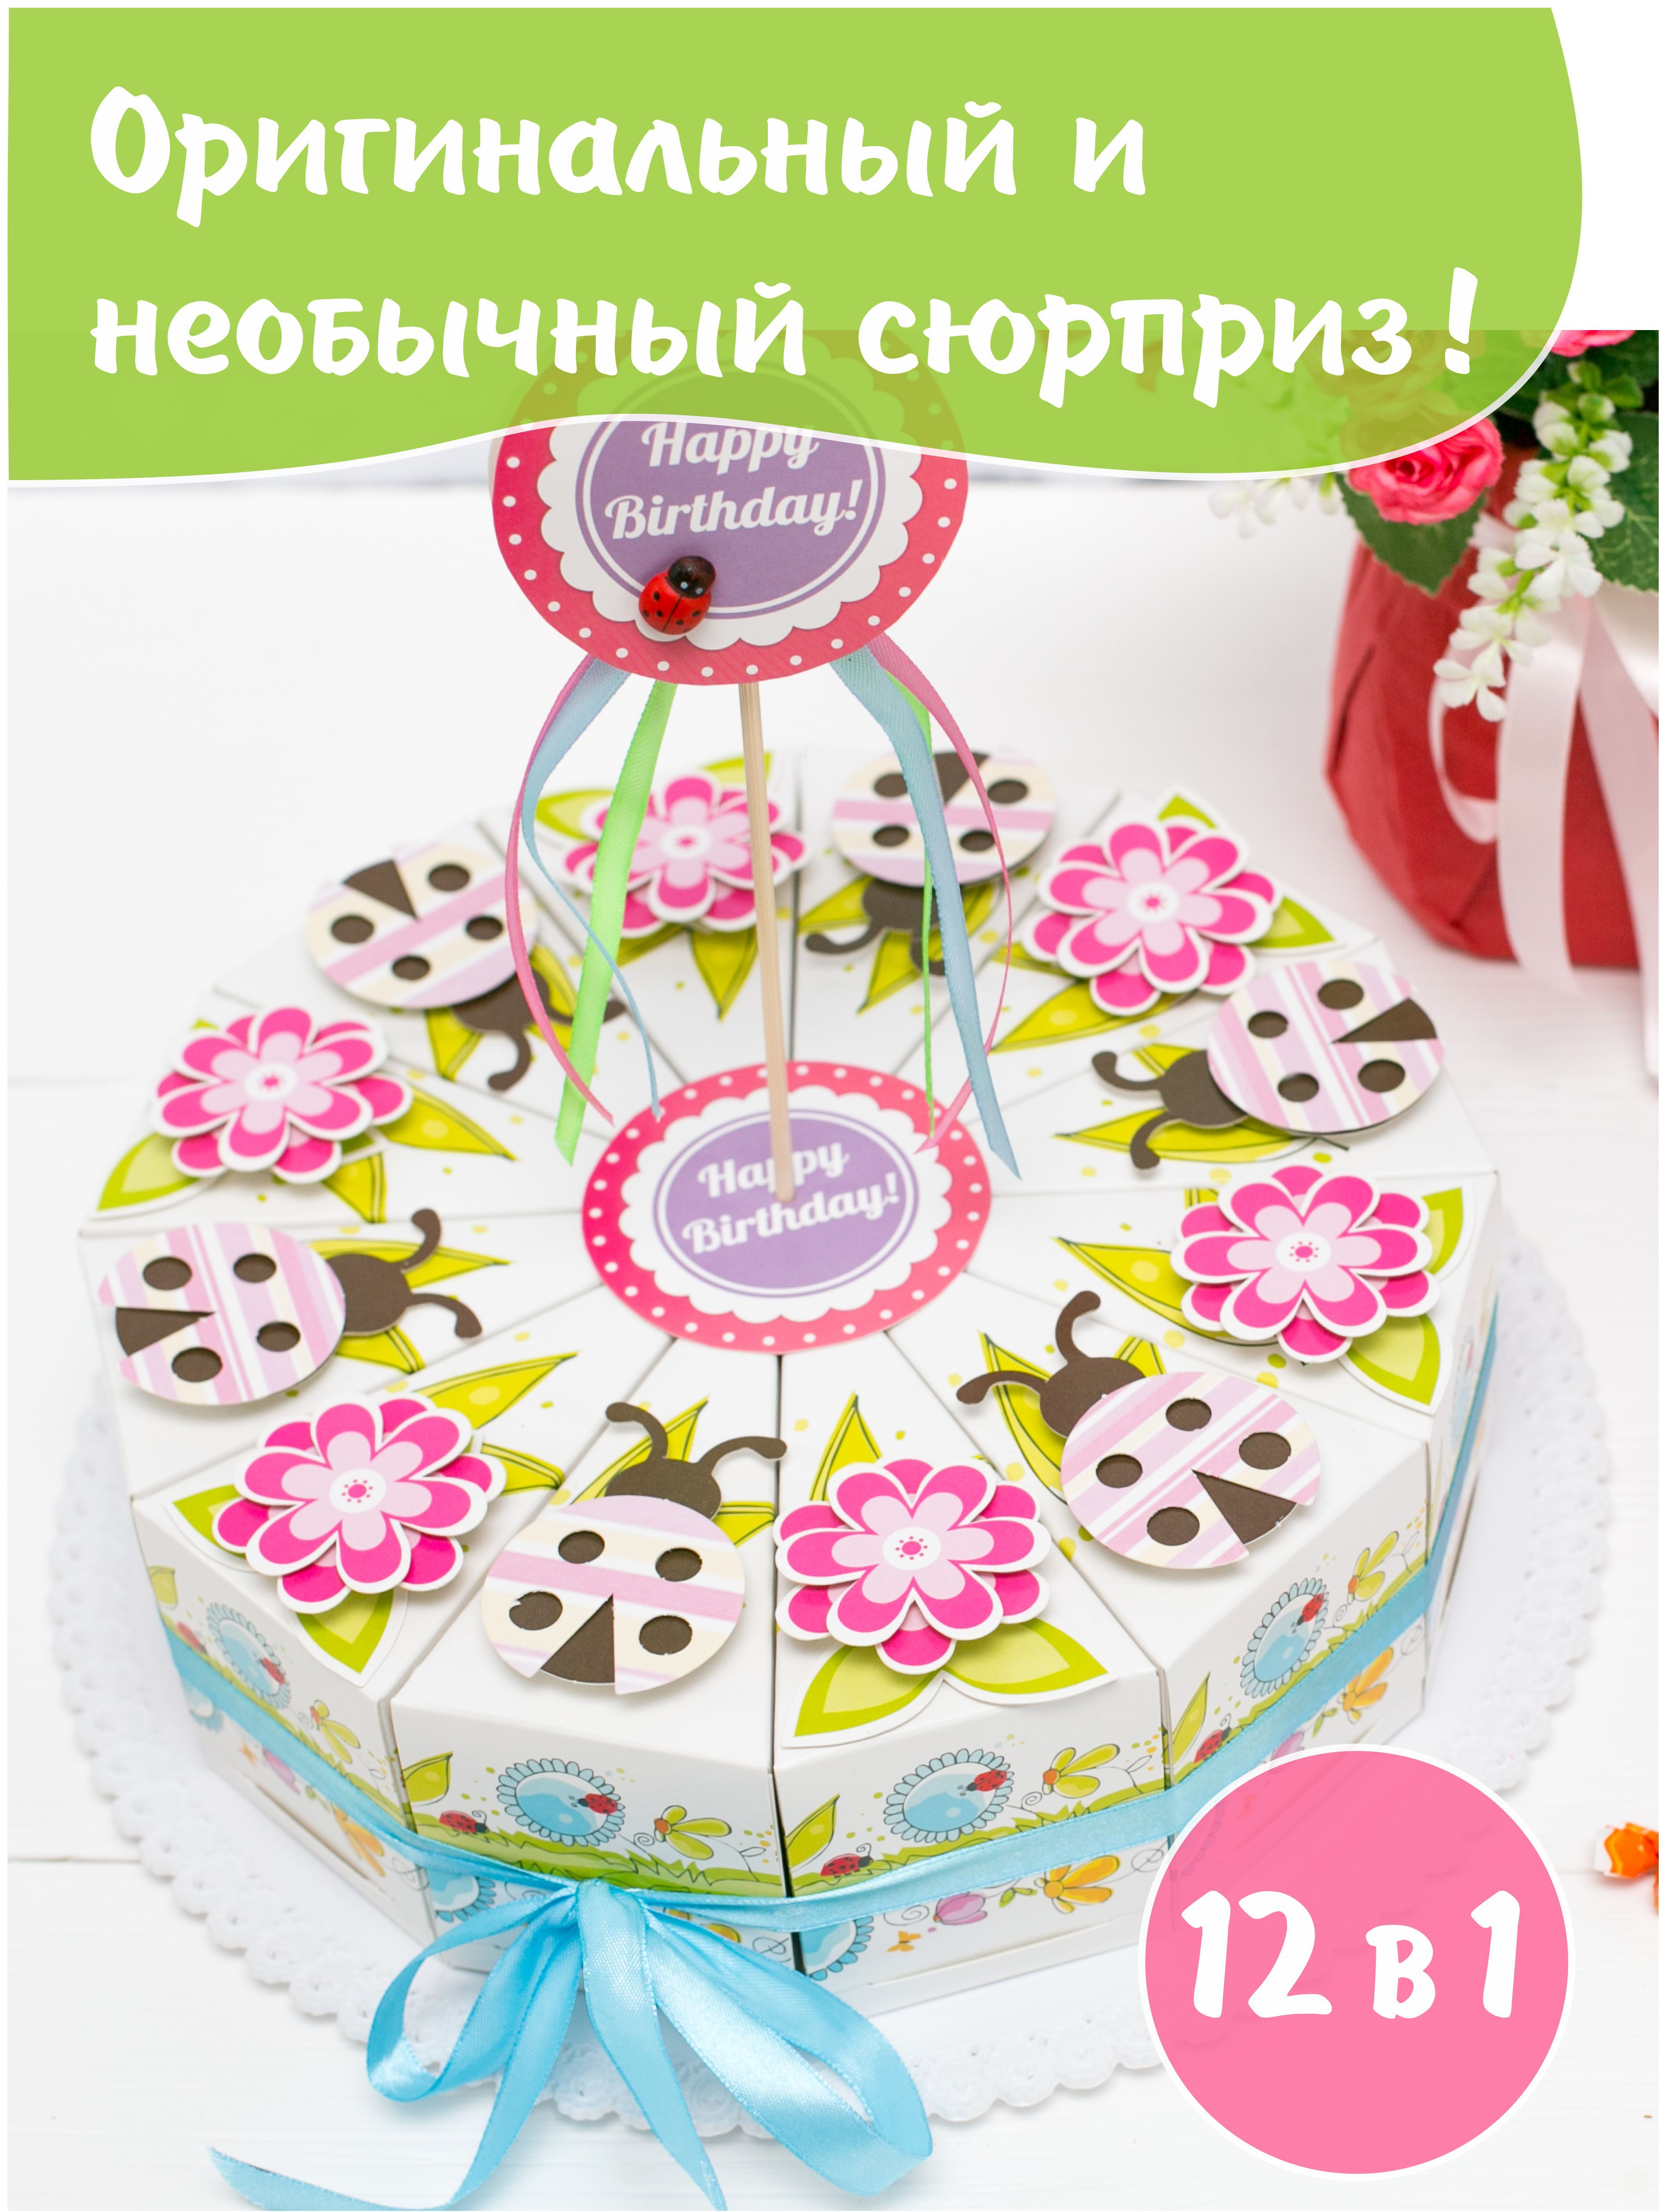 Как нарисовать торт: поэтапное руководство :: thebestterrier.ru